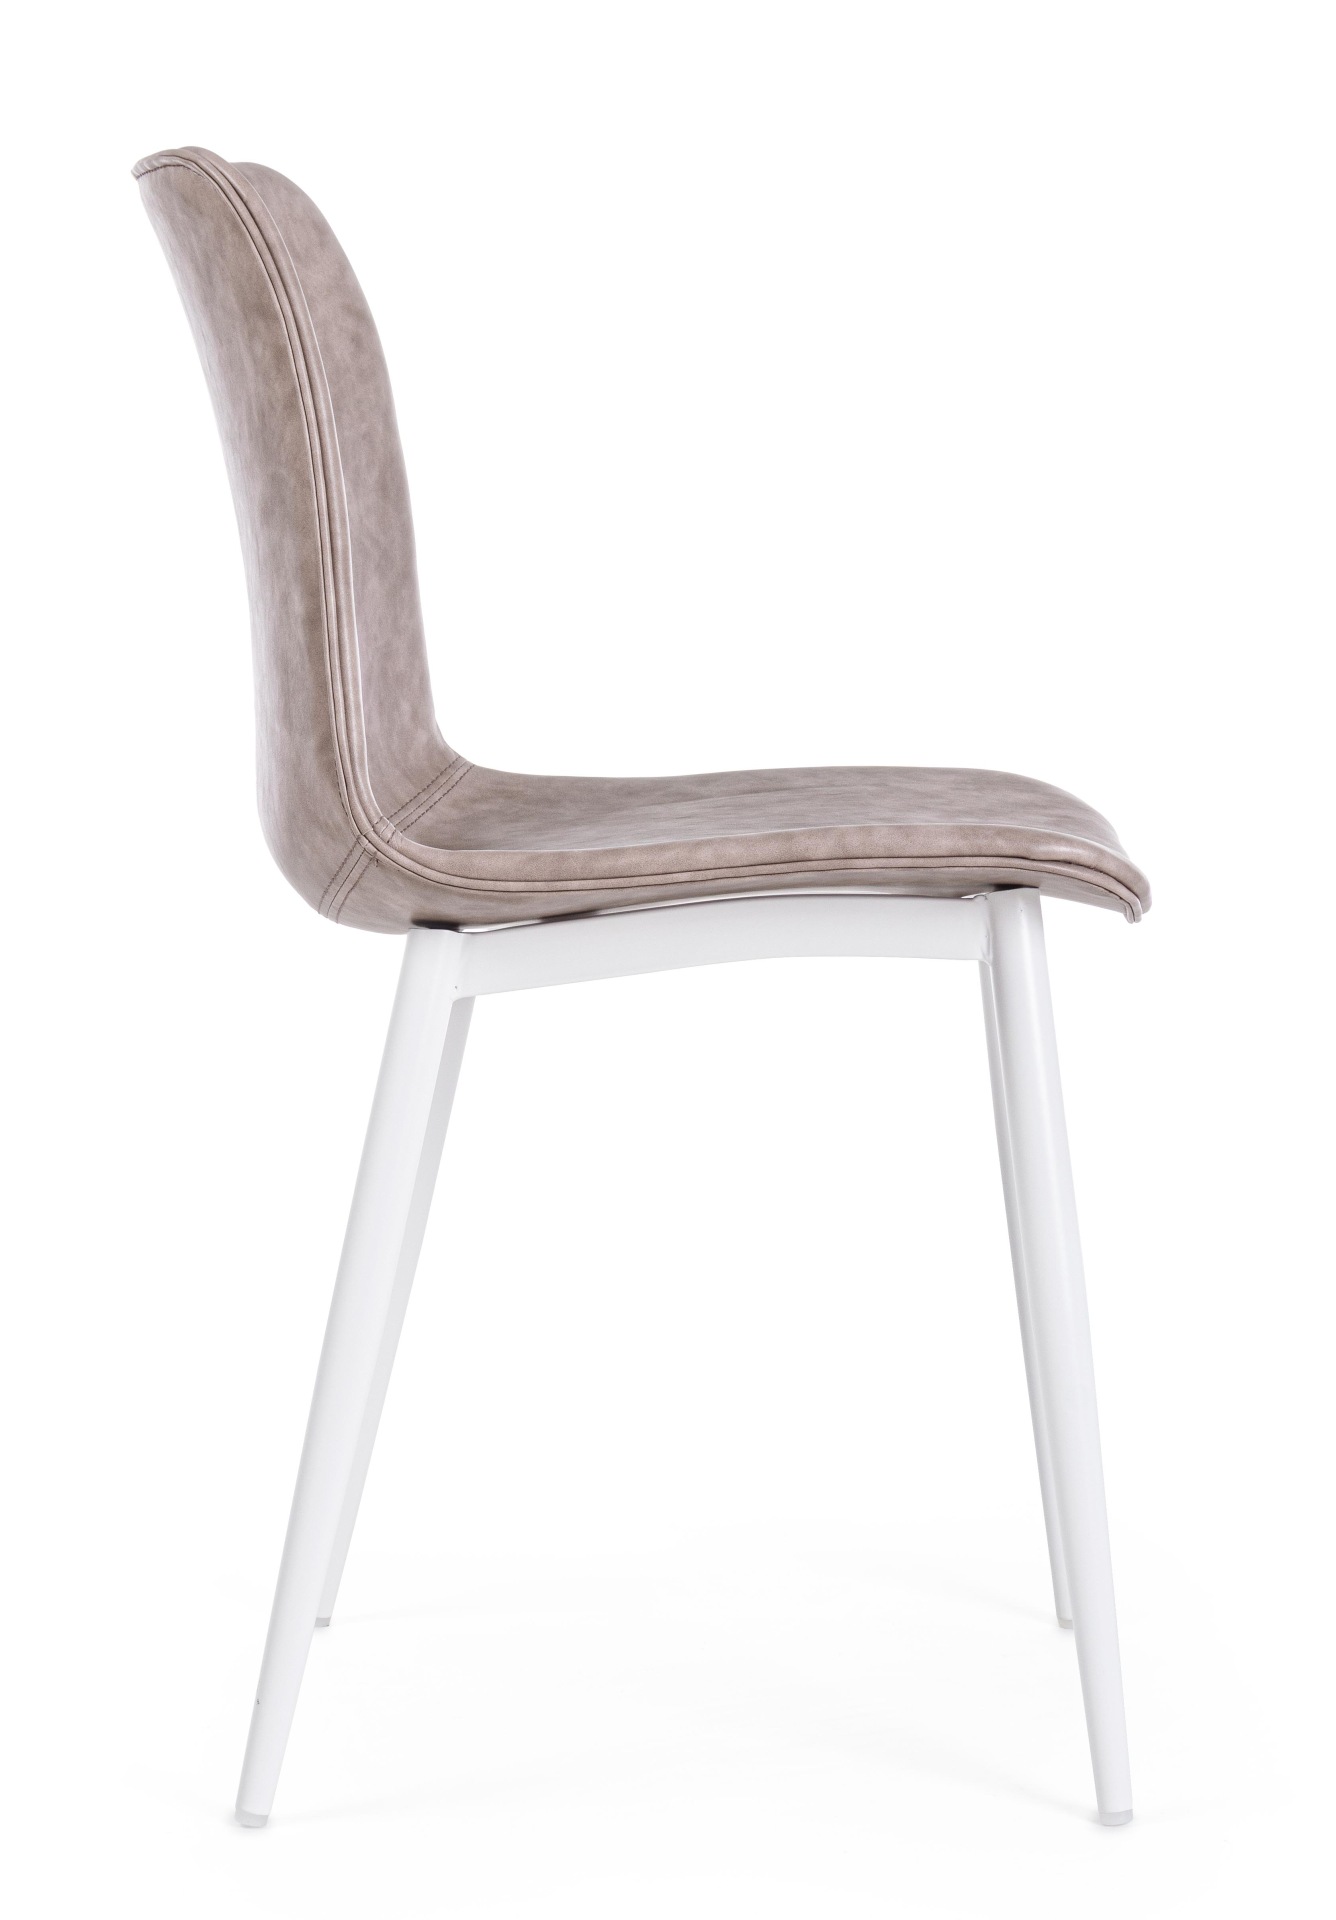 Der Esszimmerstuhl Kyra überzeugt mit seinem modernen Design. Gefertigt wurde der Stuhl aus Kunstleder, welcher einen Beige Farbton besitzt. Das Gestell ist aus Metall und ist Weiß. Die Sitzhöhe beträgt 44 cm.